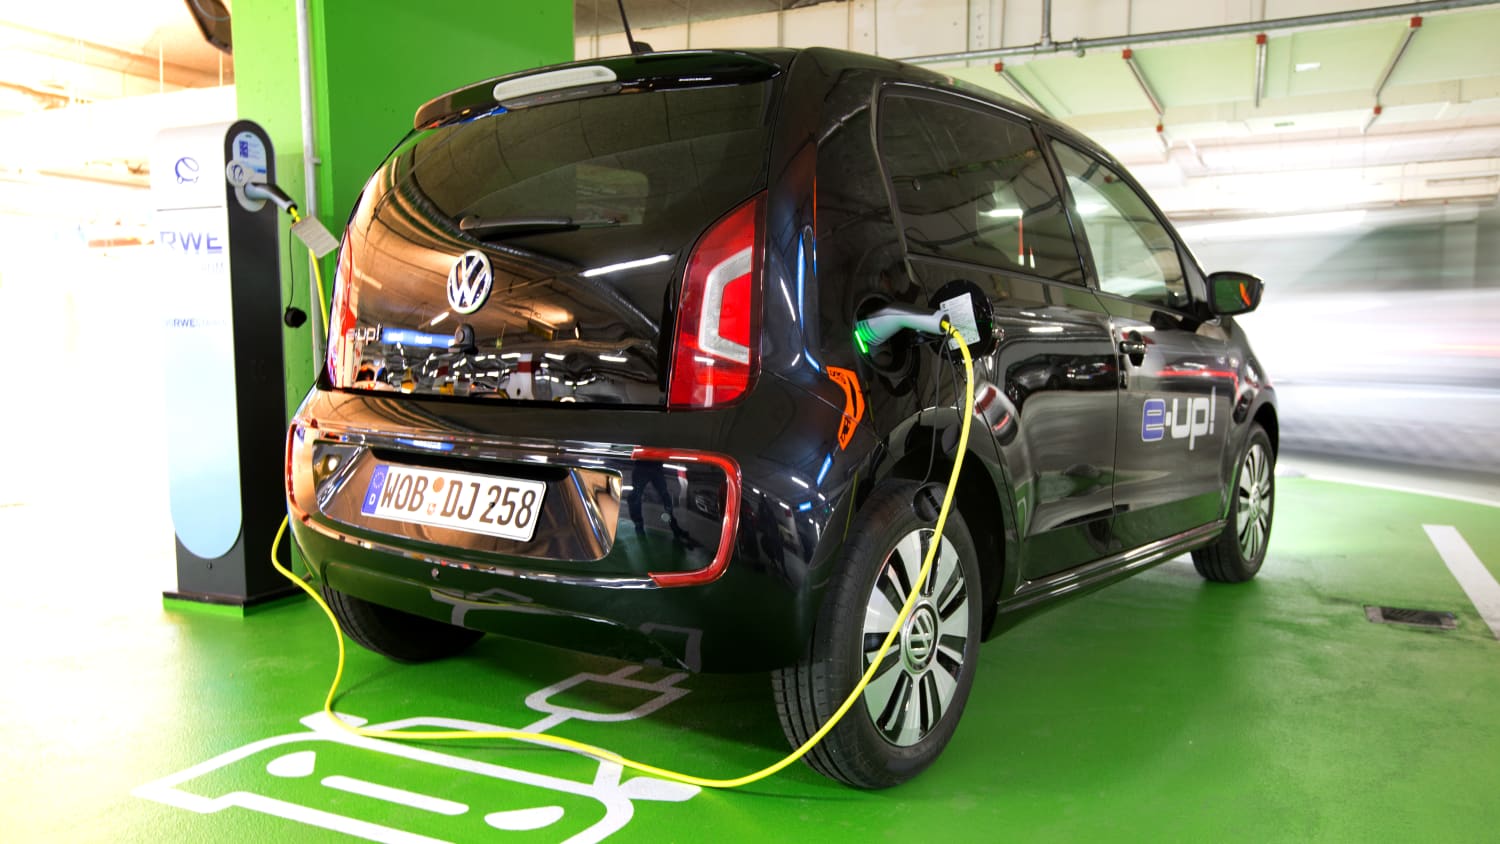 Grüne Umweltplakette: So darf Ihr Auto in die Umweltzonen